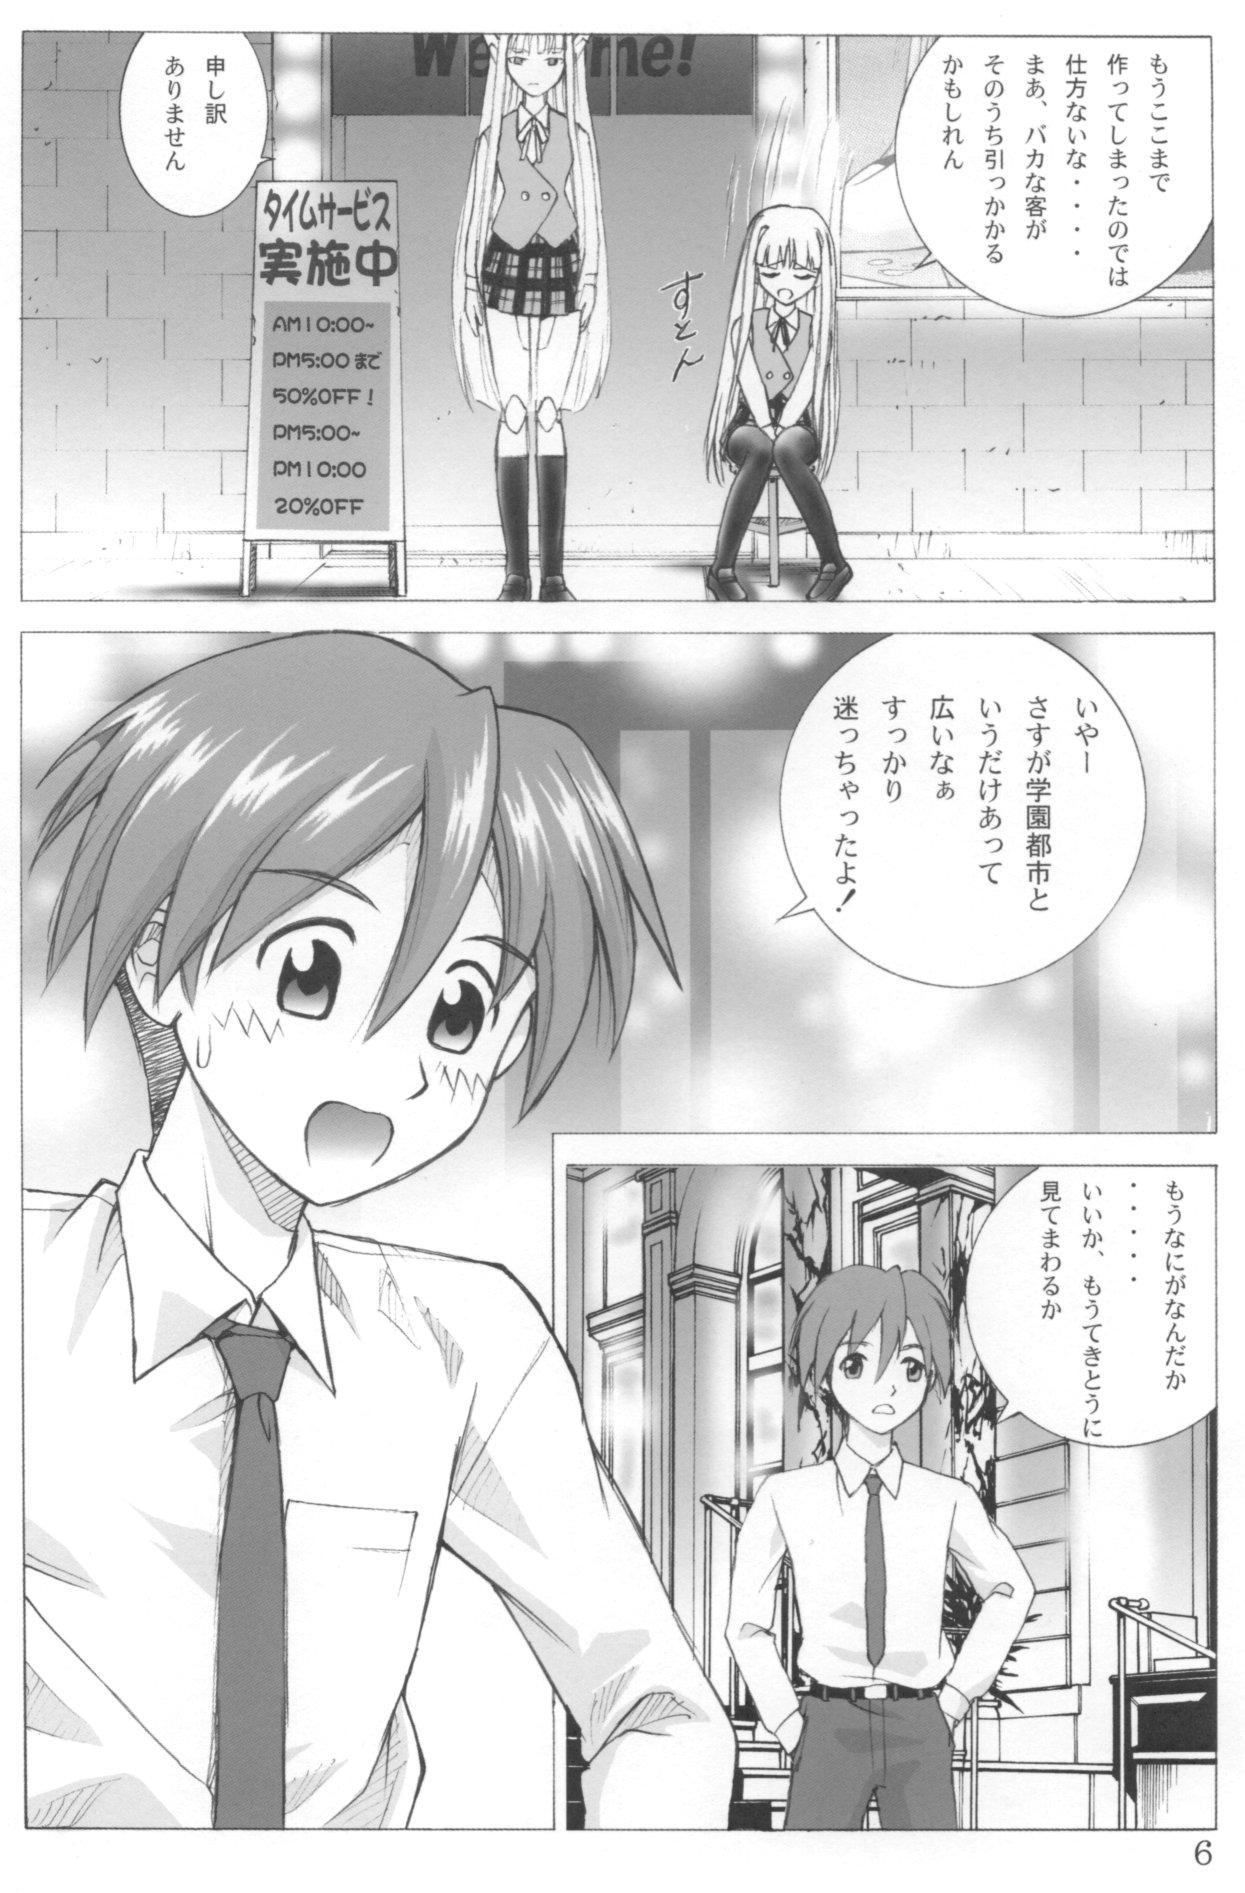 Creampies Evangelica - Mahou sensei negima Groupsex - Page 5